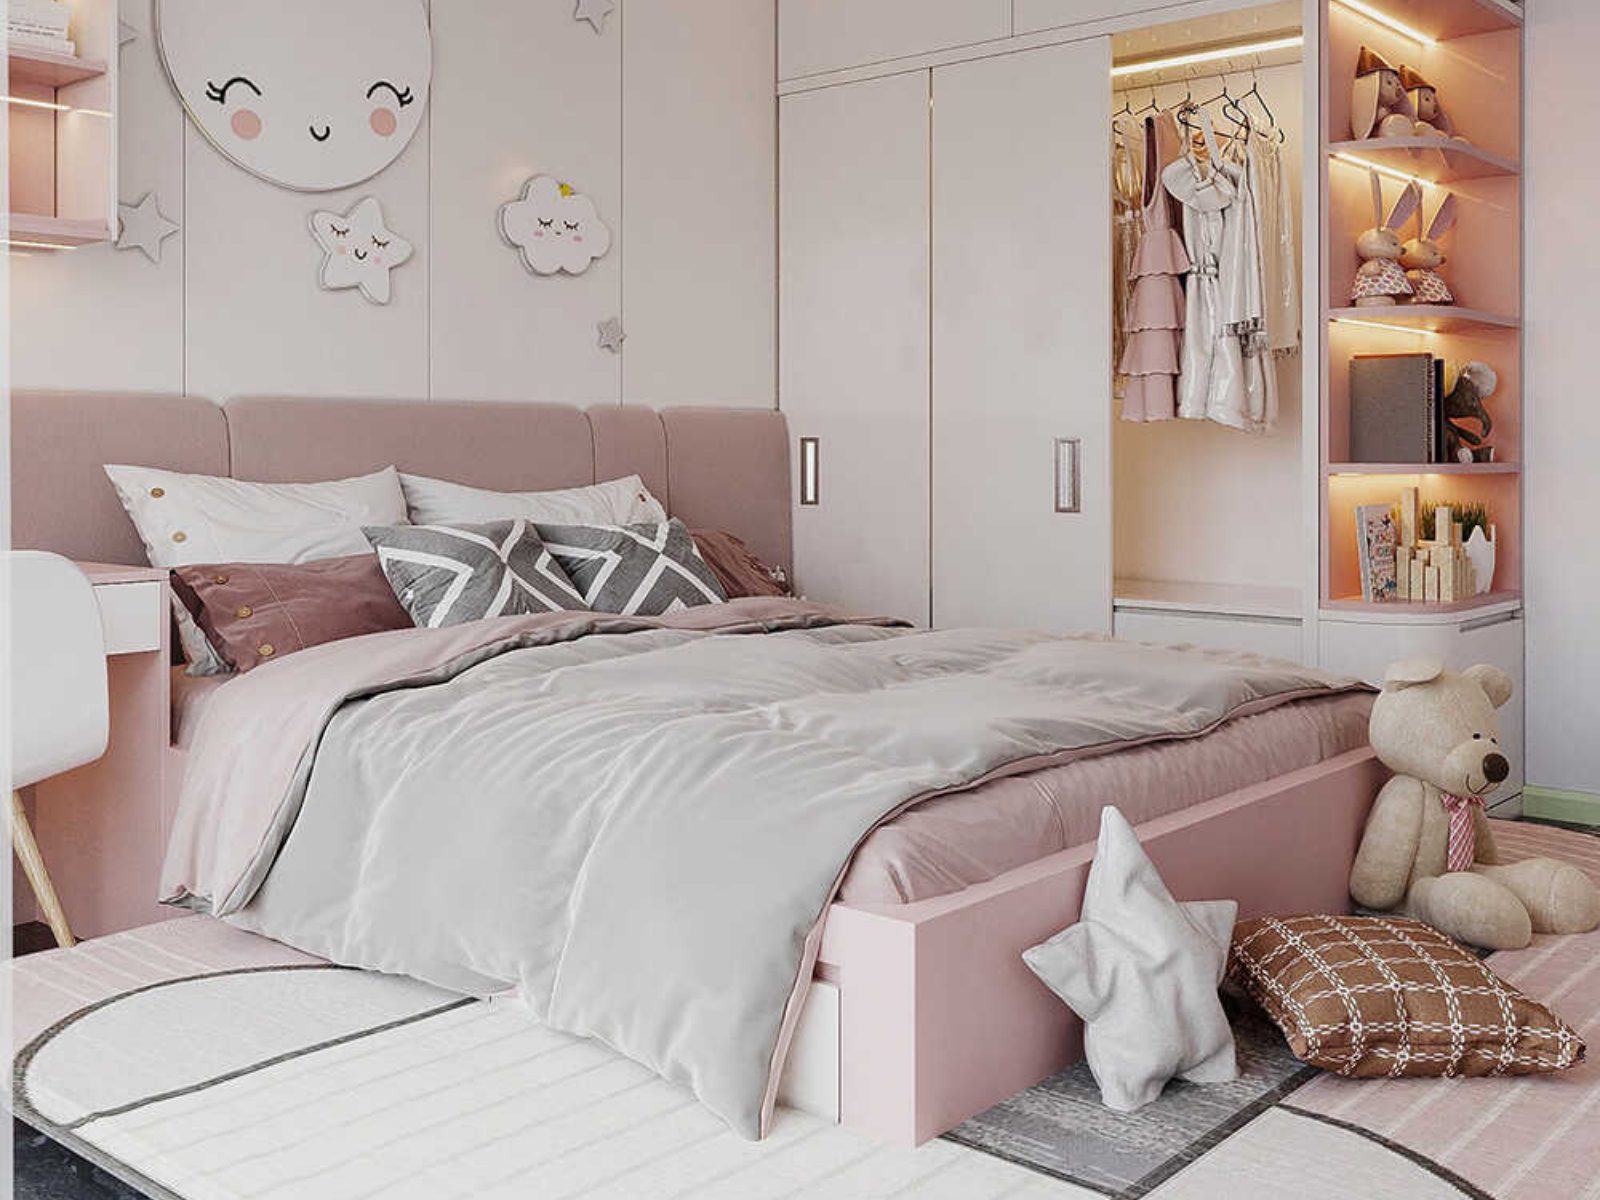 Thảm trải sản lớn kết màu trắng, hồng, xám cho phòng ngủ bé gái màu hồng